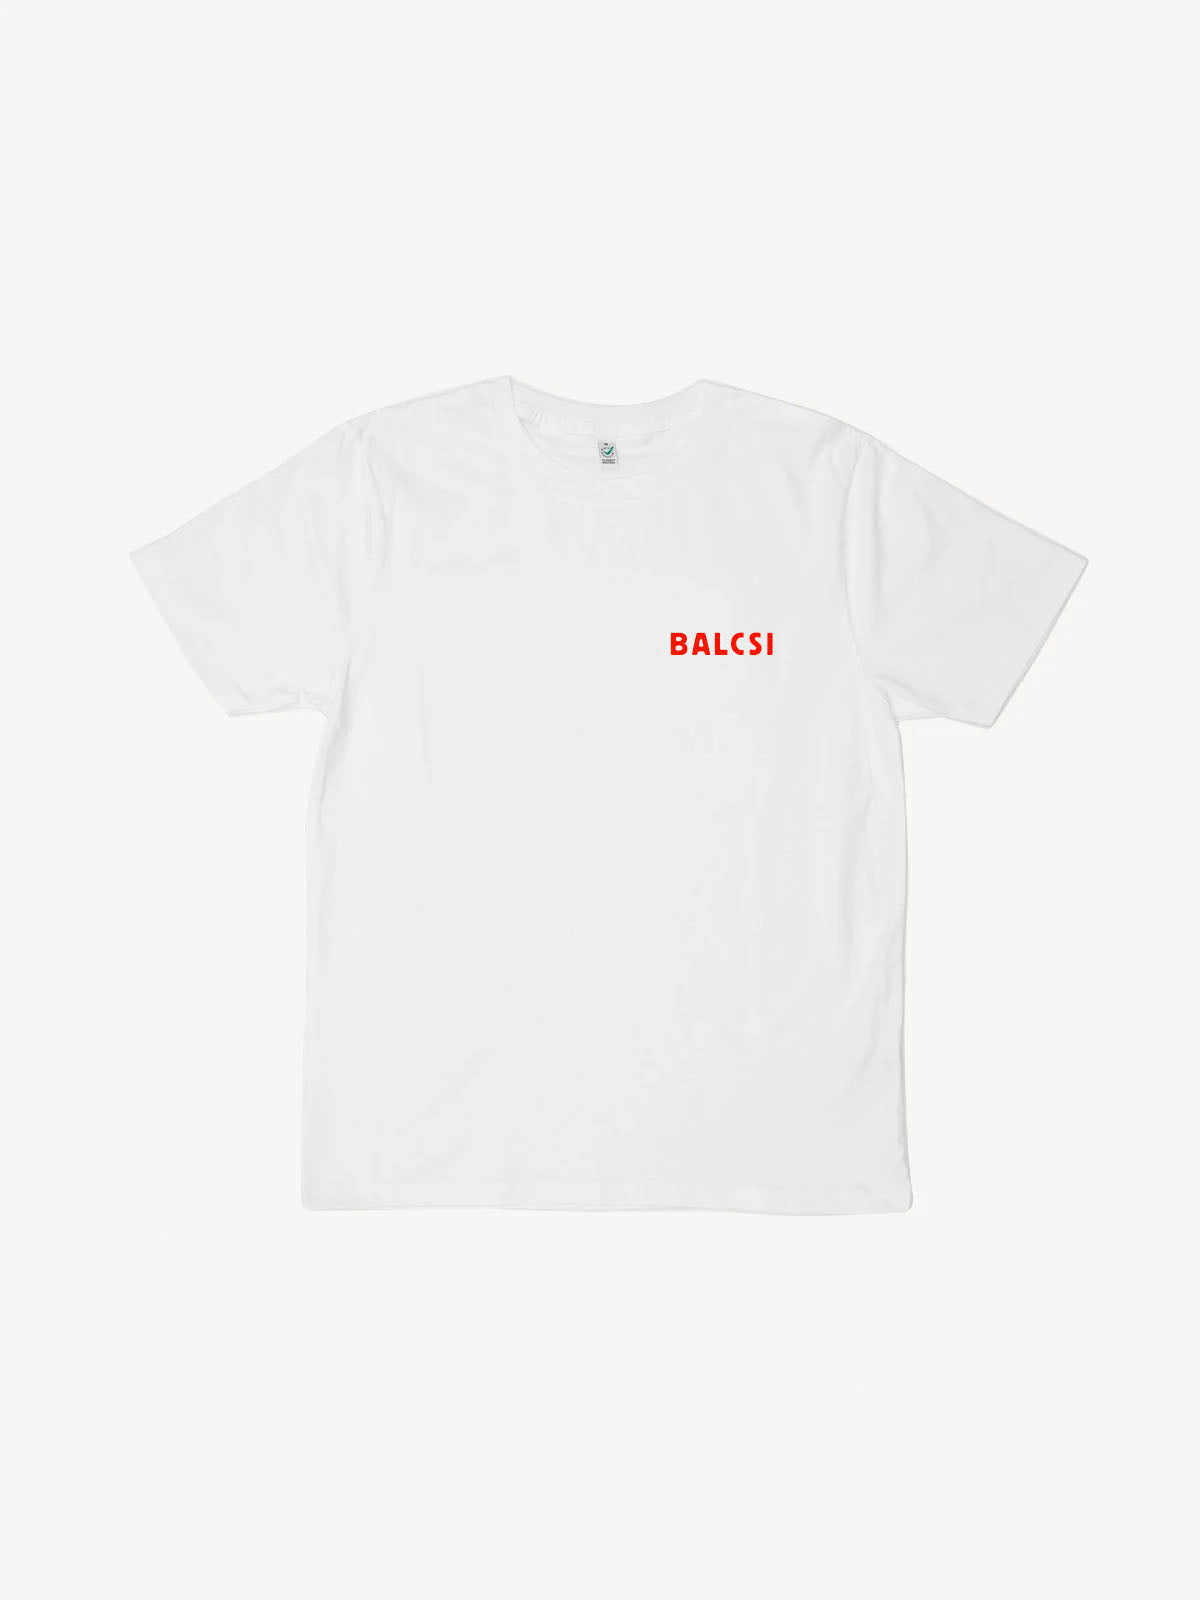 BALCSI white t-shirt